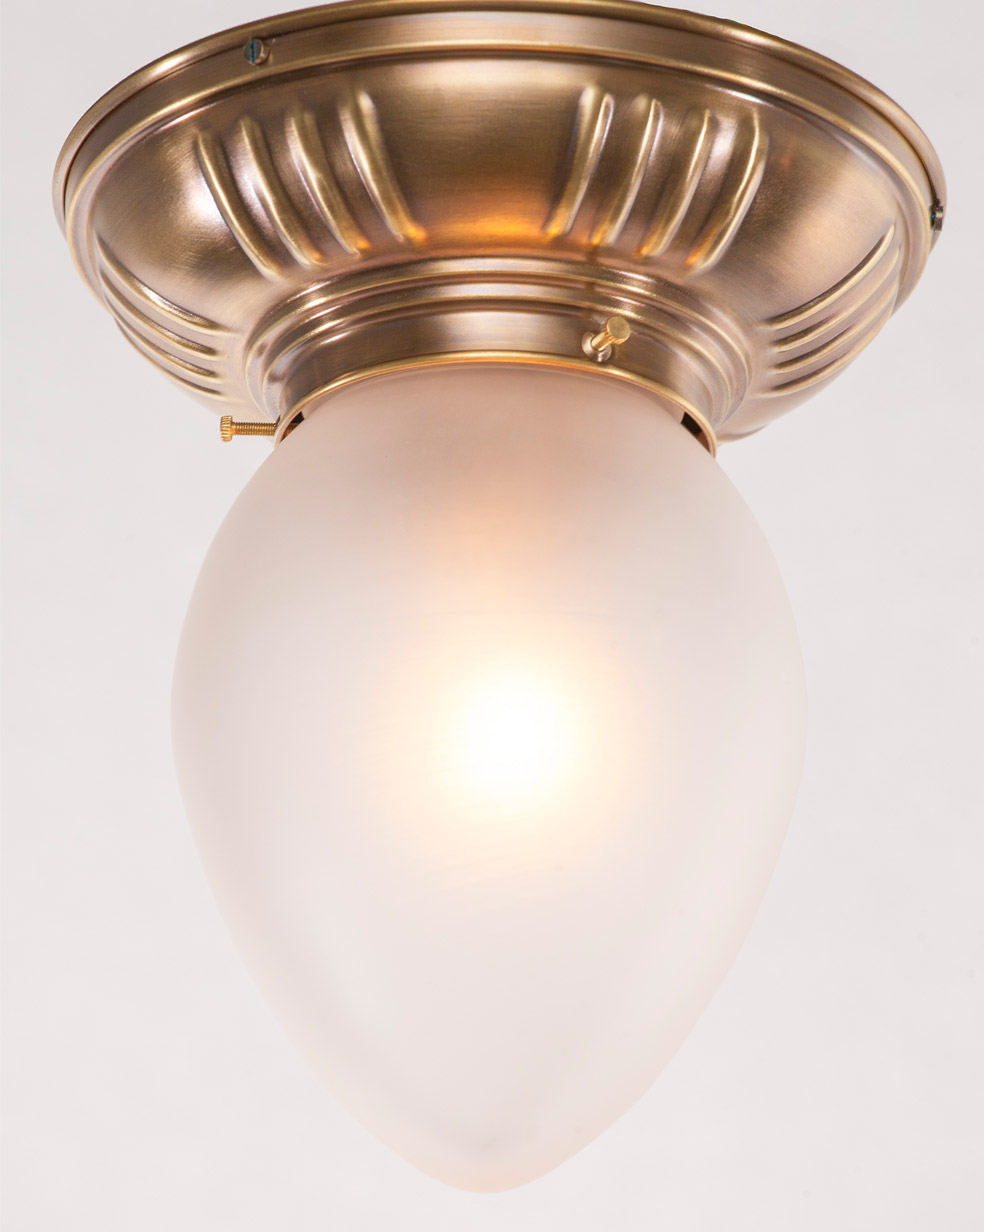 Kleine Jugendstil-Deckenleuchte Tropfen PRAG-8 Ø 18 cm: Kleine, klassisch-schlichte Deckenlampe mit satiniertem Tropfen-Glas